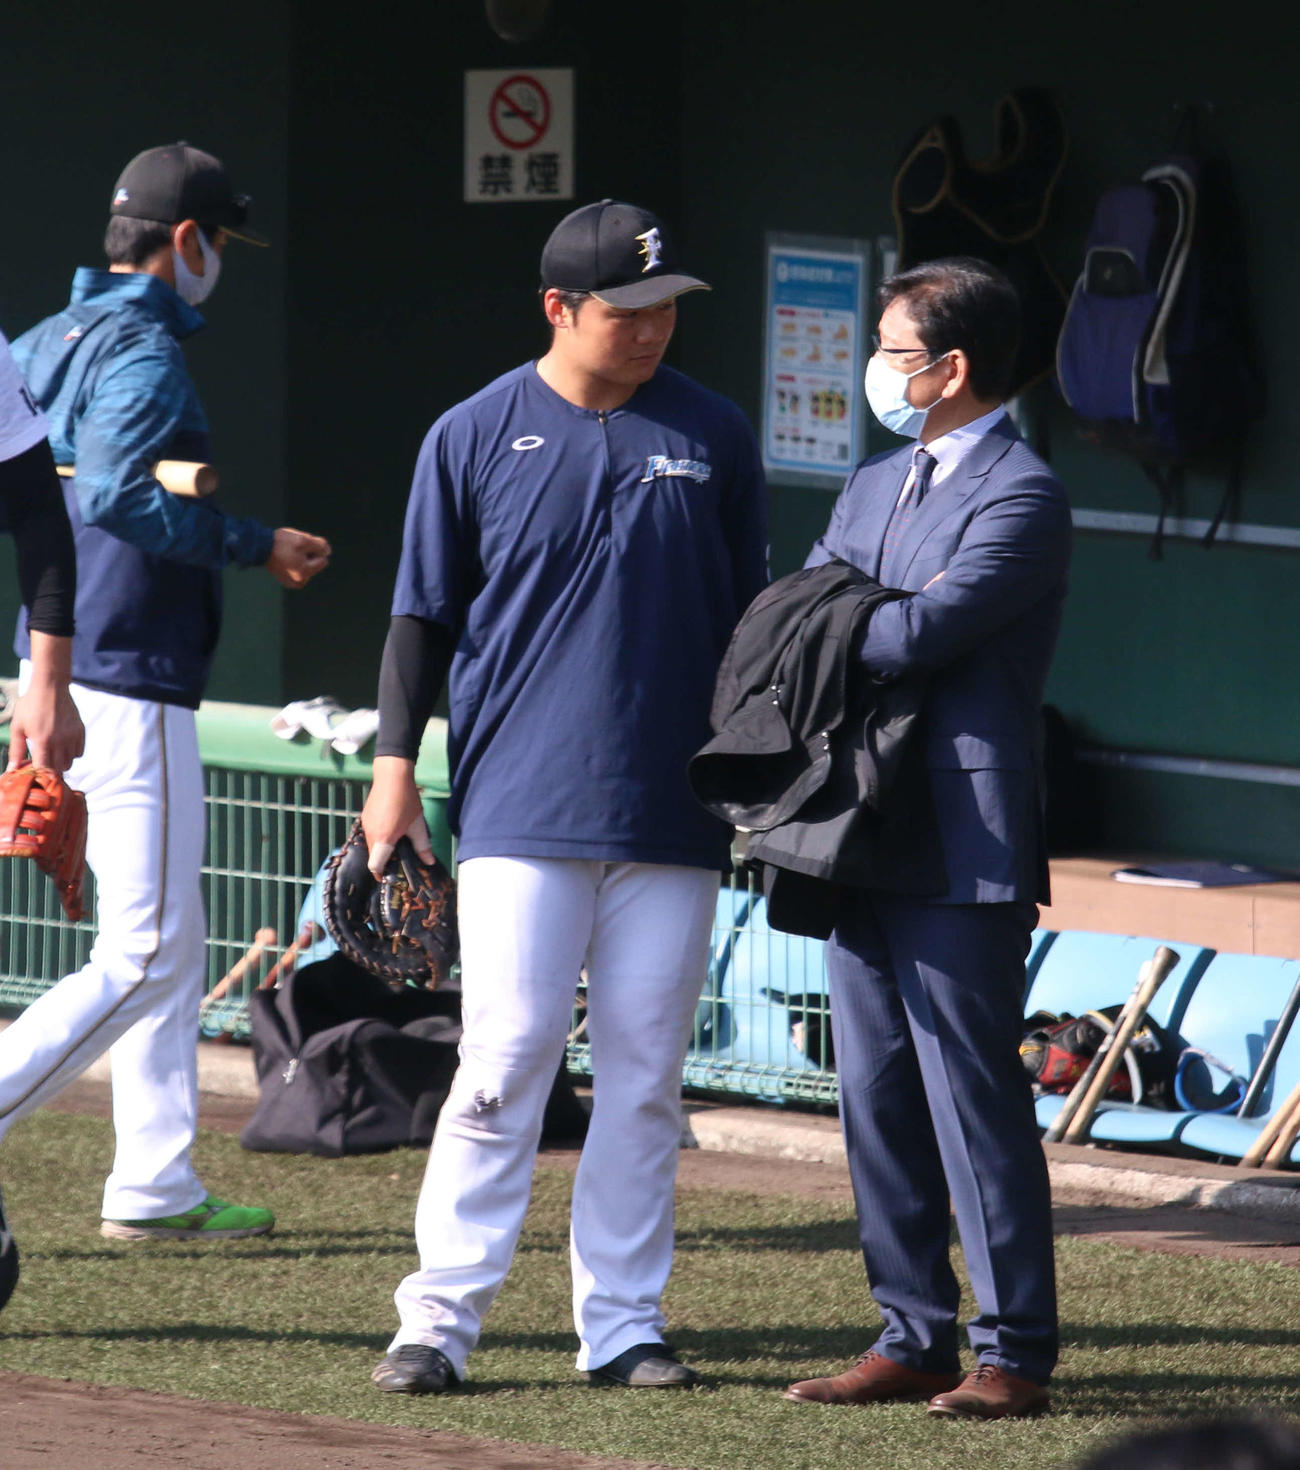 みやざきフェニックス・リーグを視察に訪れた日本ハム栗山監督は清宮（左）と話をする（撮影・木下大輔）